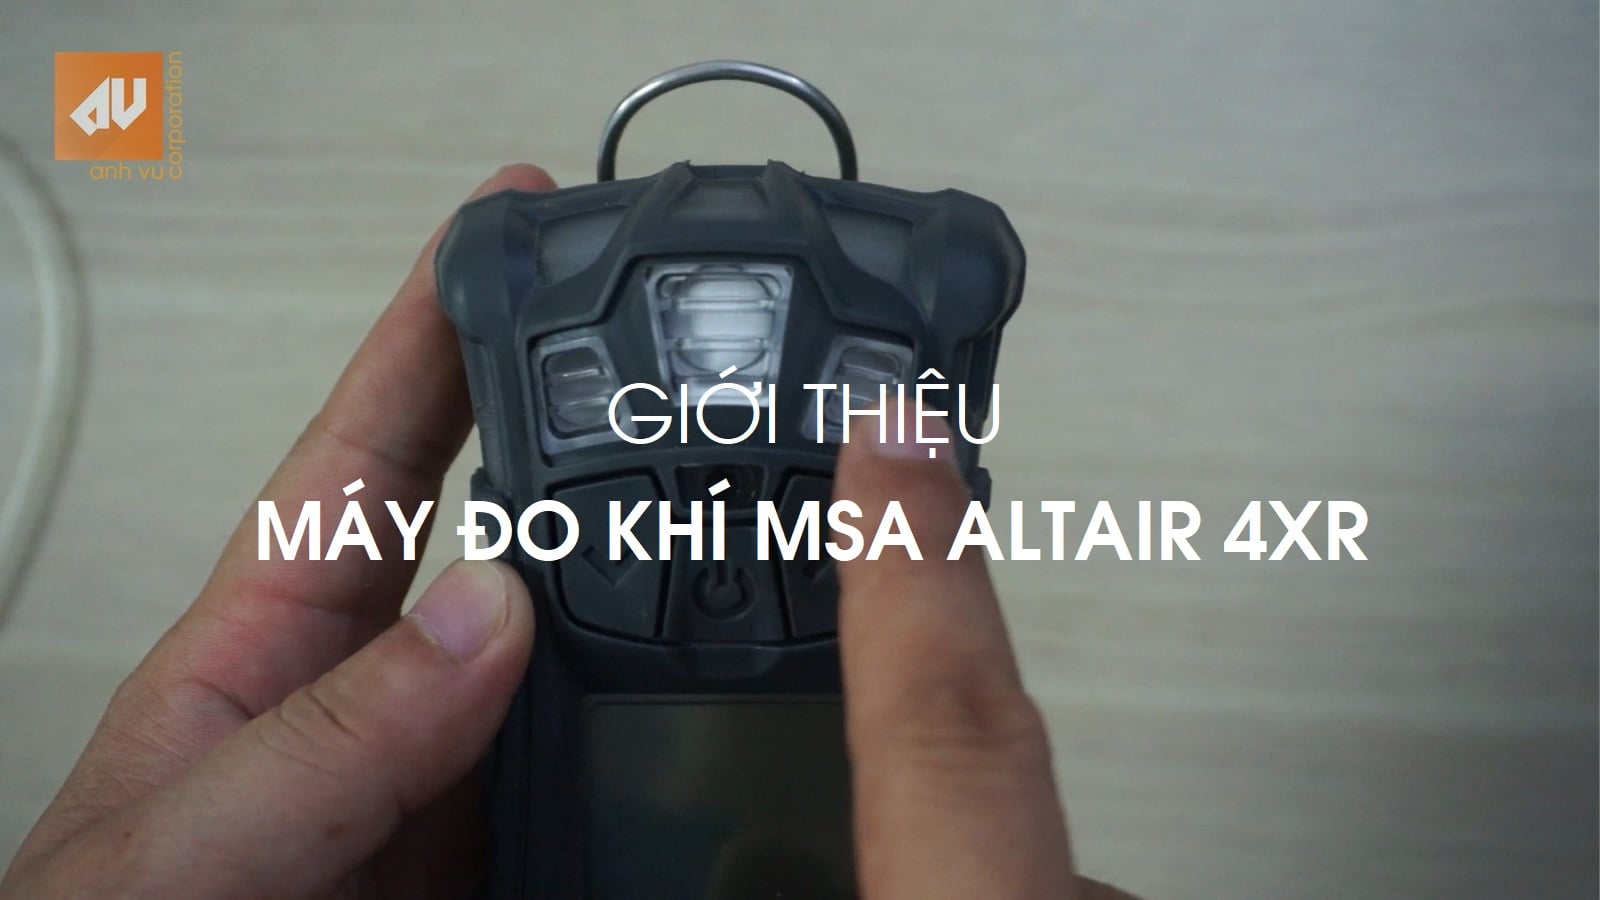 Introduce new MSA Altair 4XR